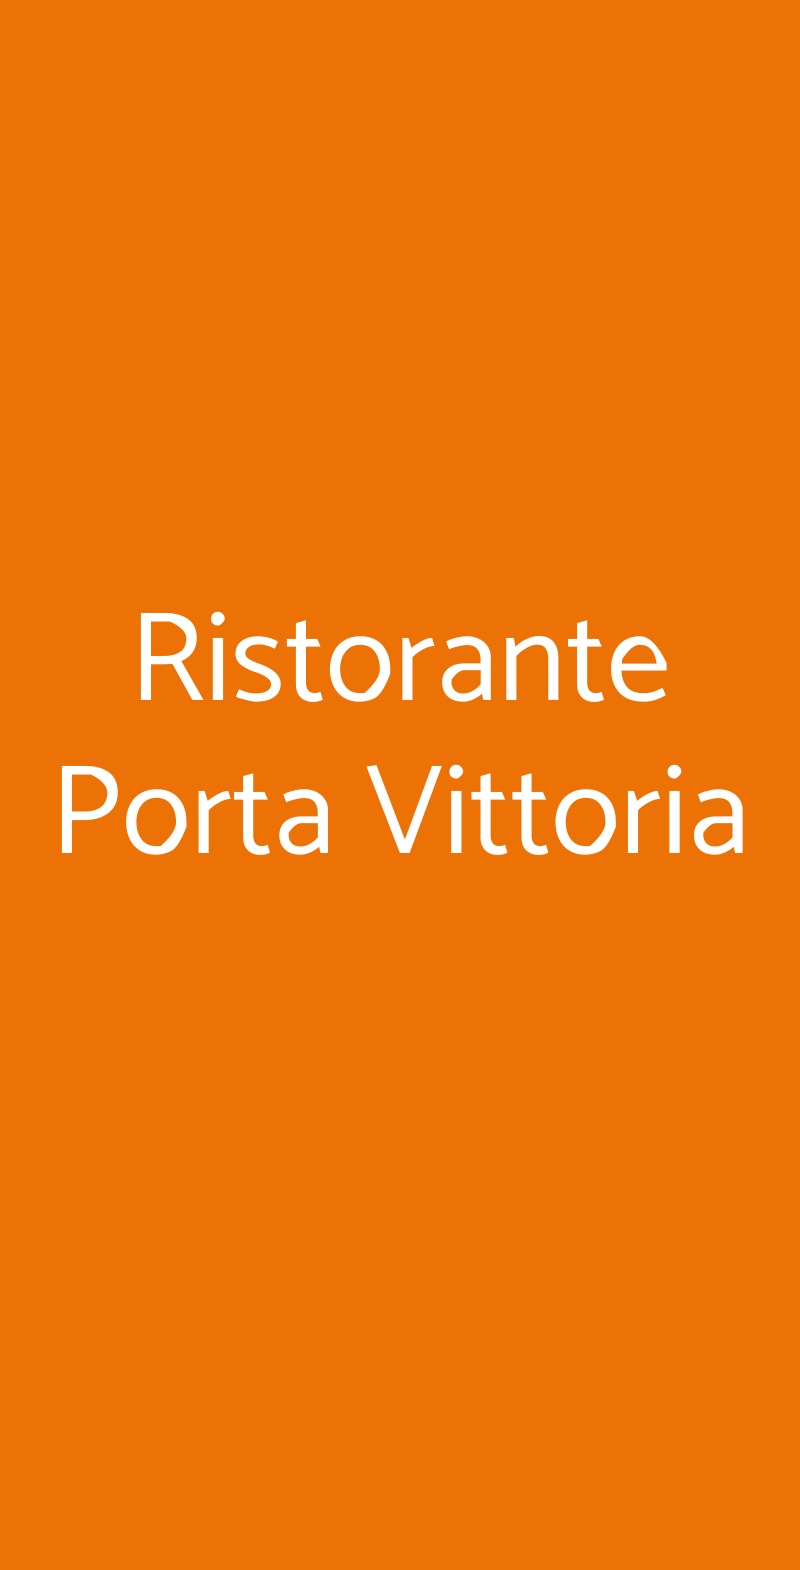 Ristorante Porta Vittoria Milano menù 1 pagina